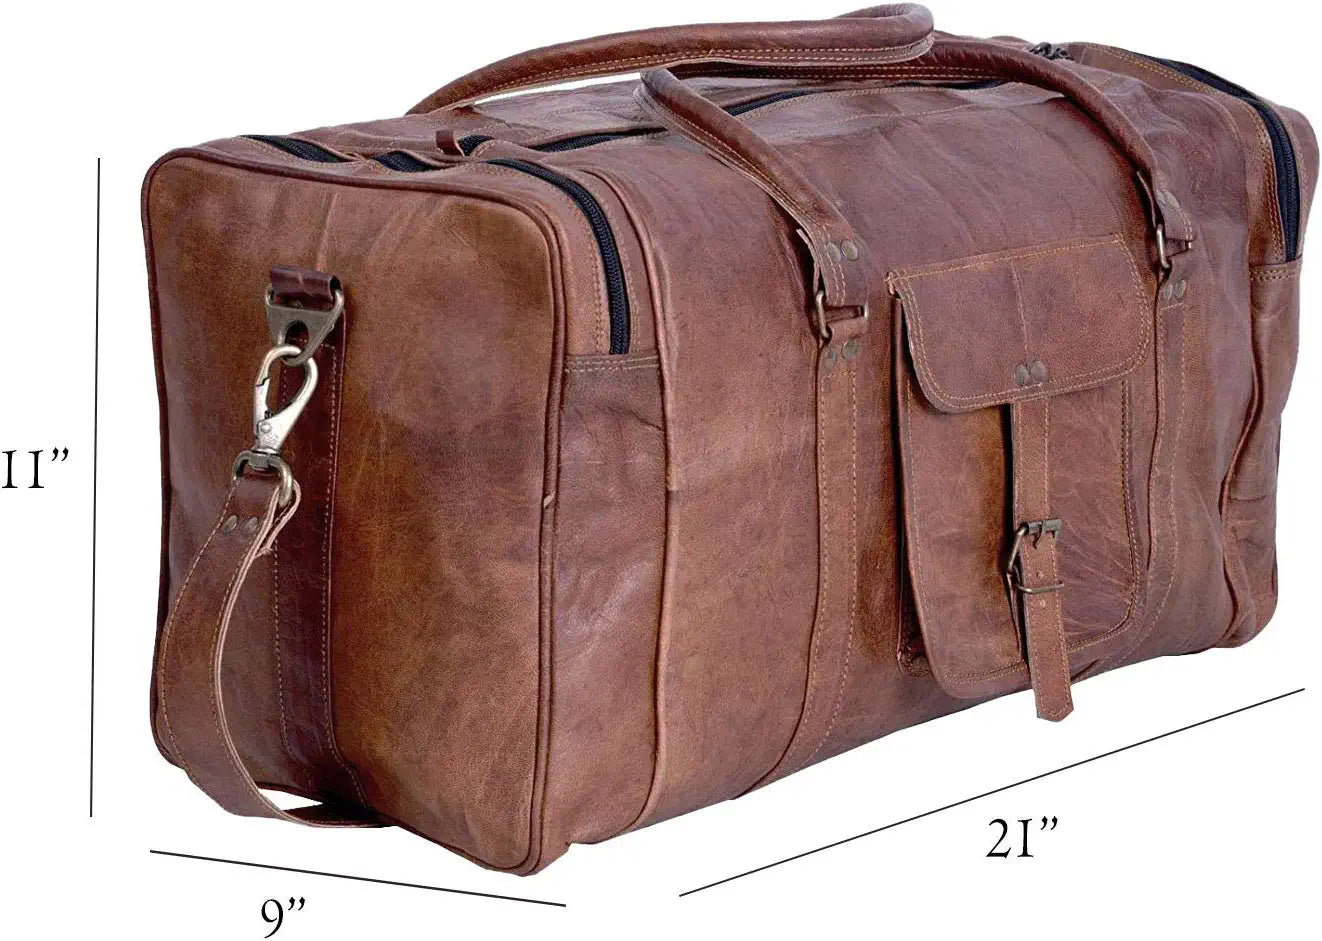 Vintage Brown Leather Weekender Bag